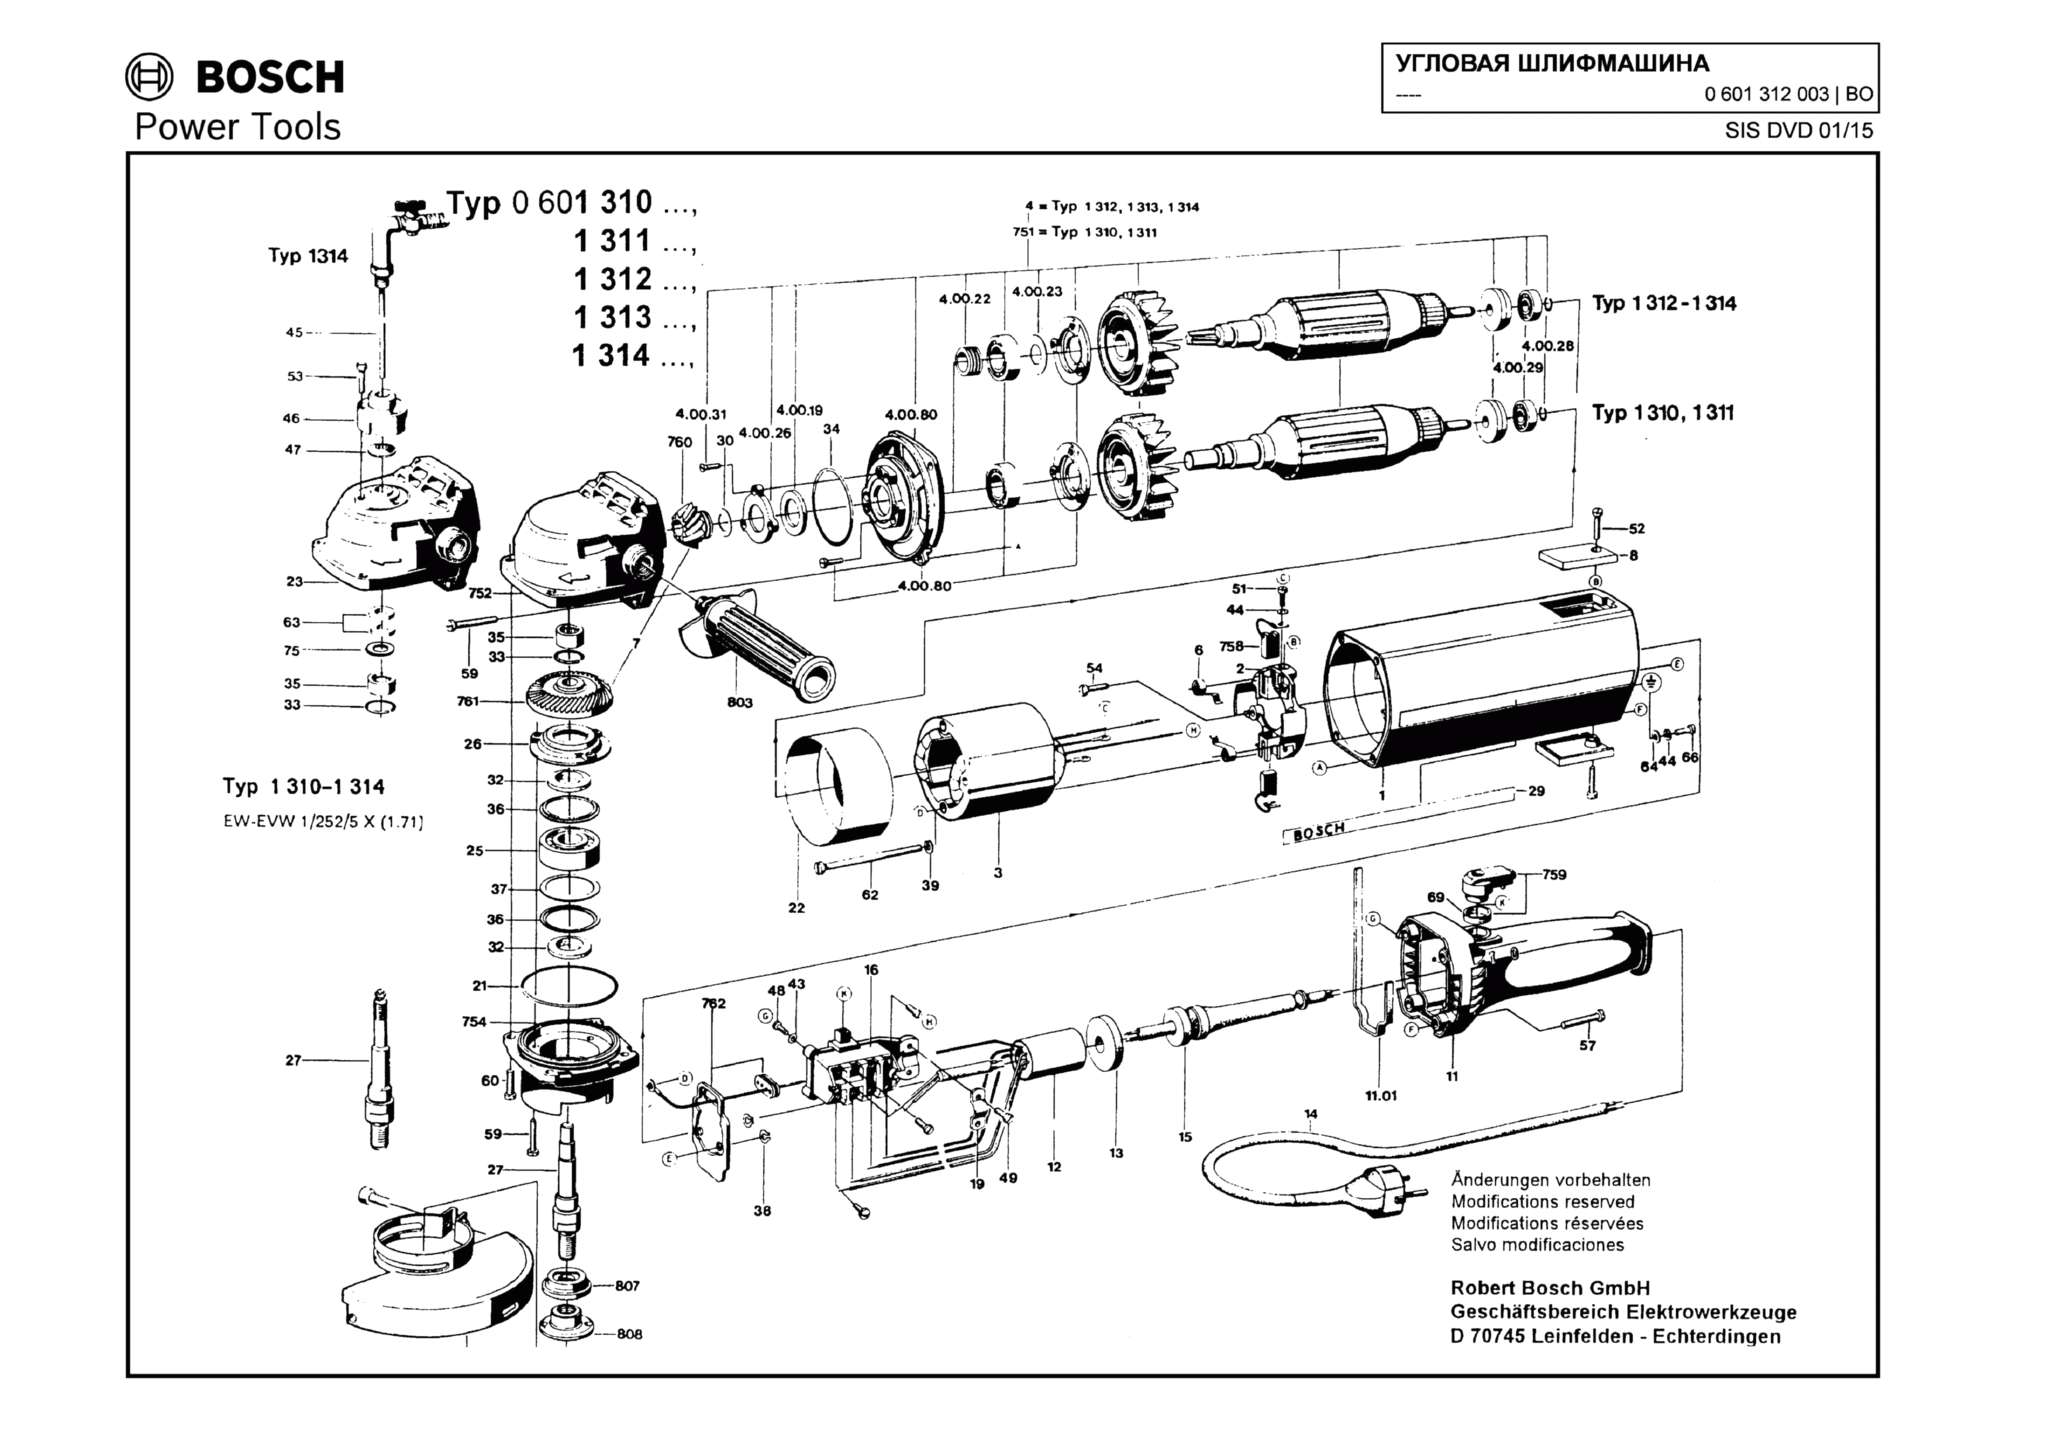 Запчасти, схема и деталировка Bosch (ТИП 0601312003)